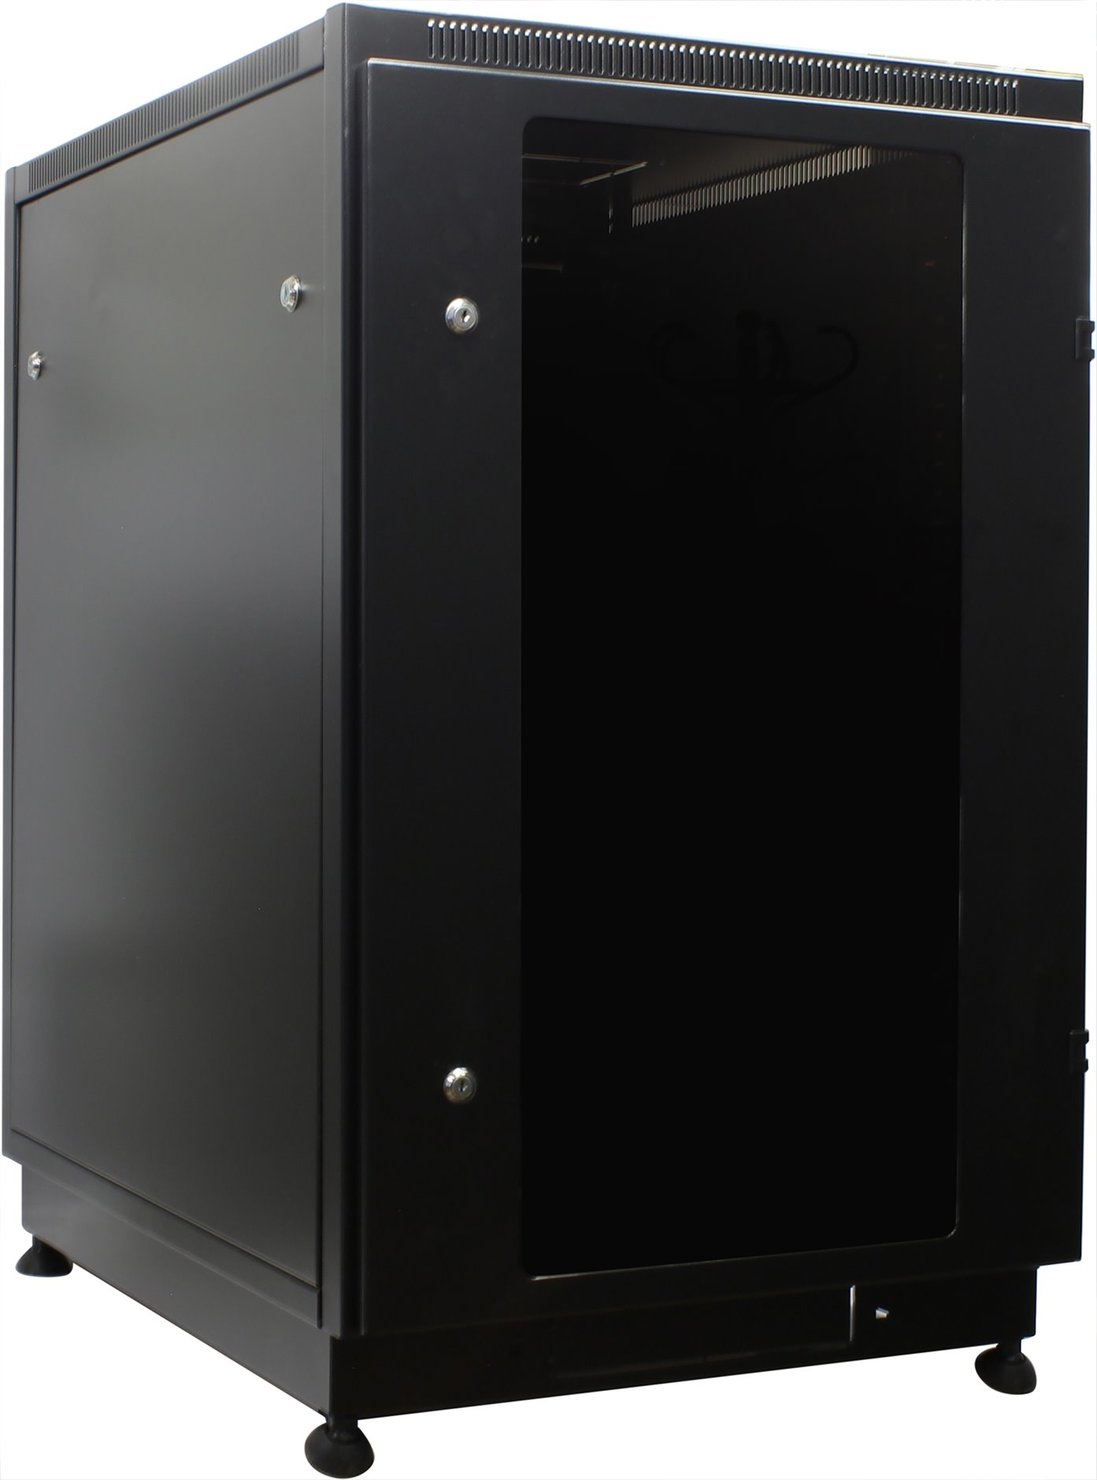 Шкаф напольный 18U 600x800, стекло, черный, разборный (3 места), MG18-68 B, NT, PRACTIC 2